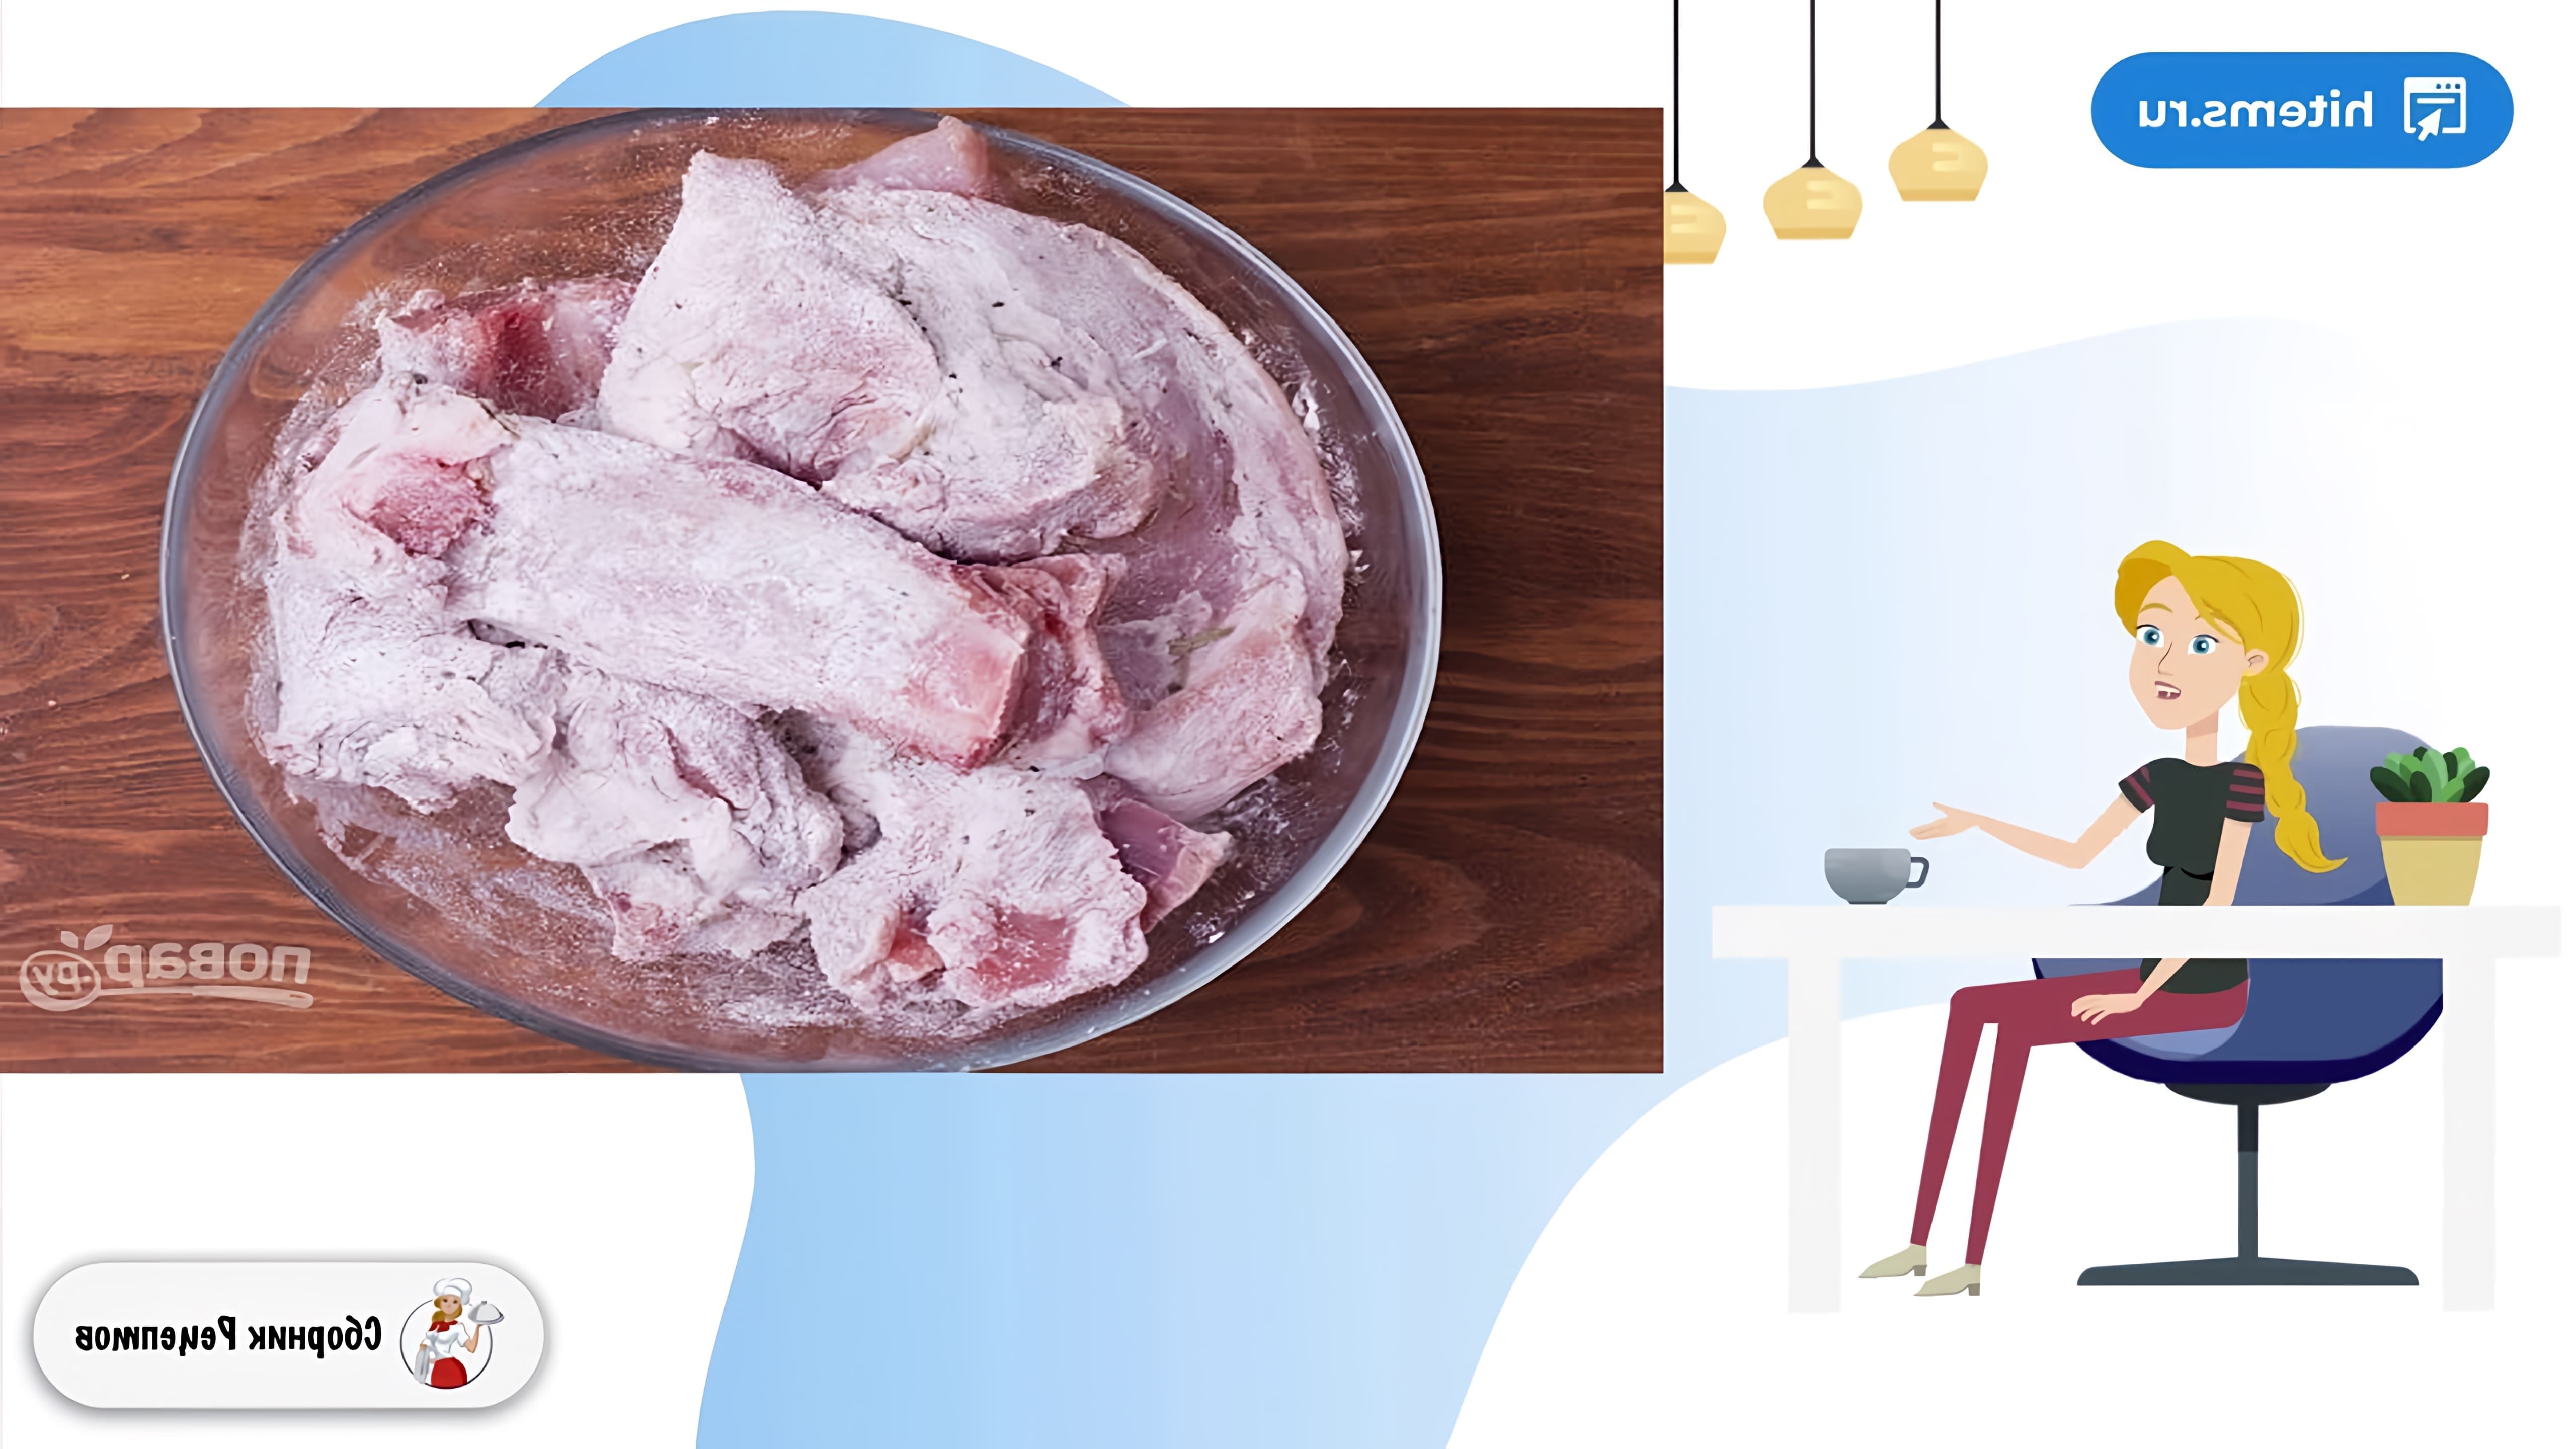 В этом видео демонстрируется рецепт приготовления свинины тушеной с сушеными грибами